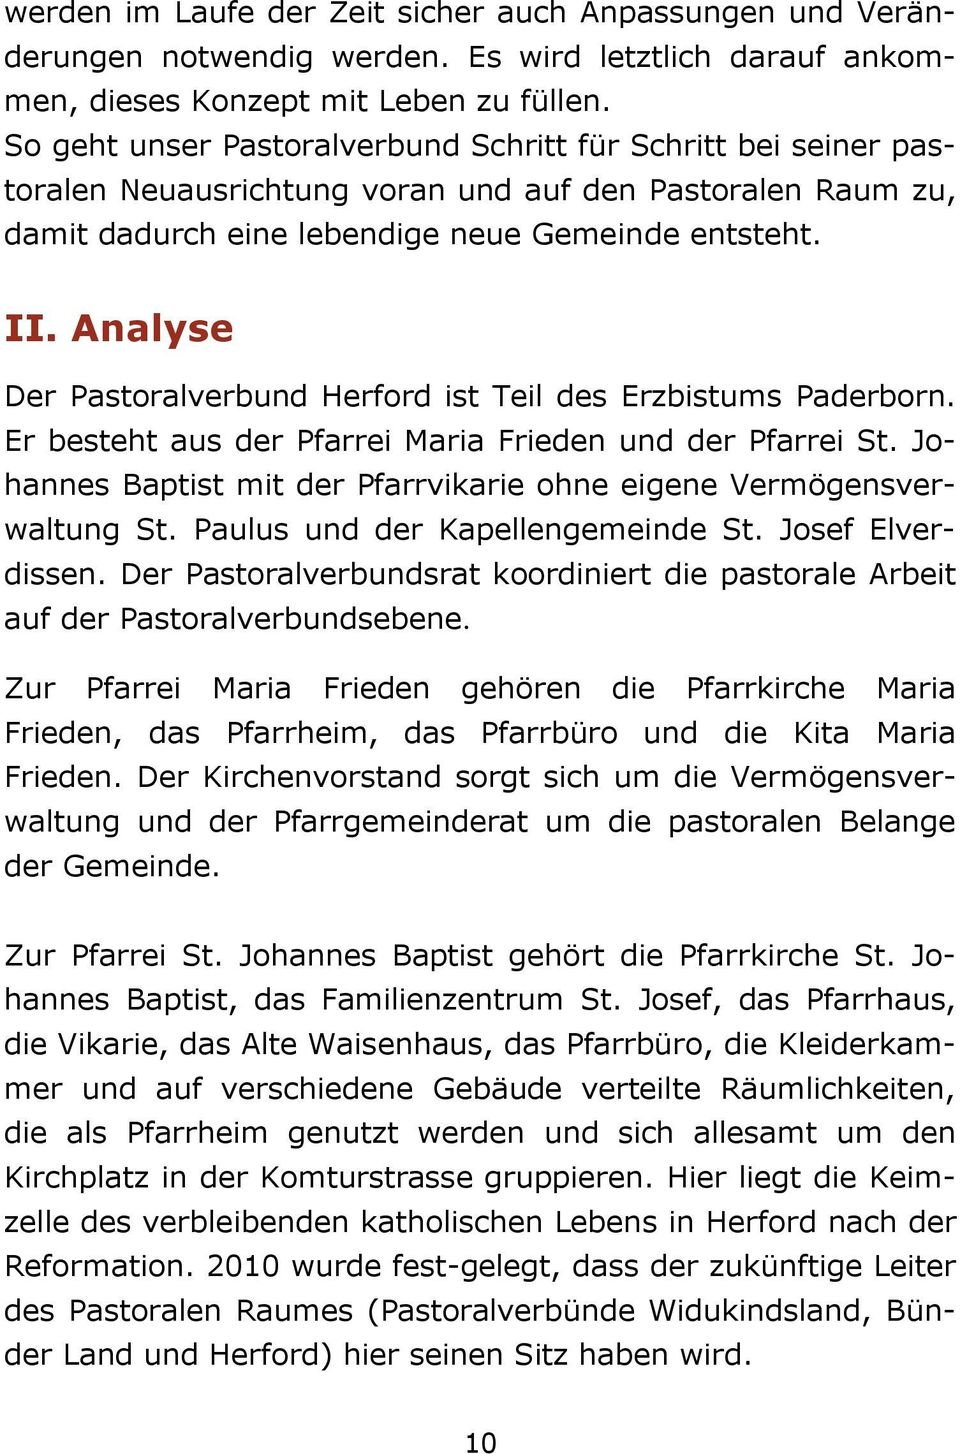 Analyse Der Pastoralverbund Herford ist Teil des Erzbistums Paderborn. Er besteht aus der Pfarrei Maria Frieden und der Pfarrei St.